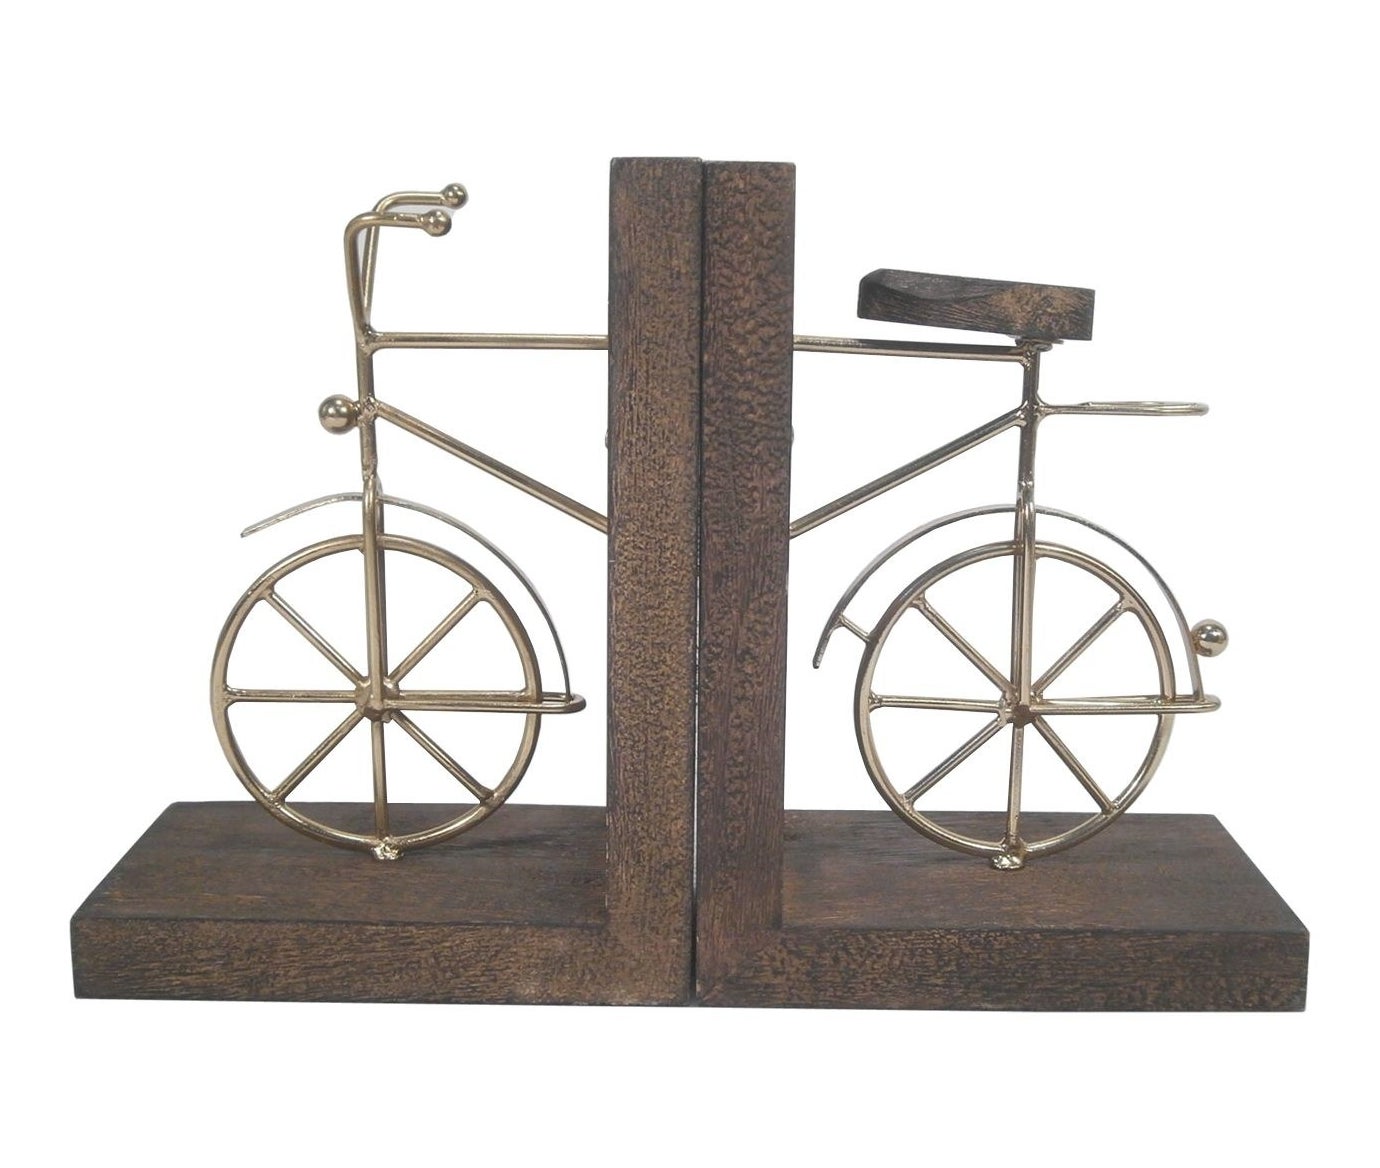 两书挡,用金属设计前后的一辆自行车